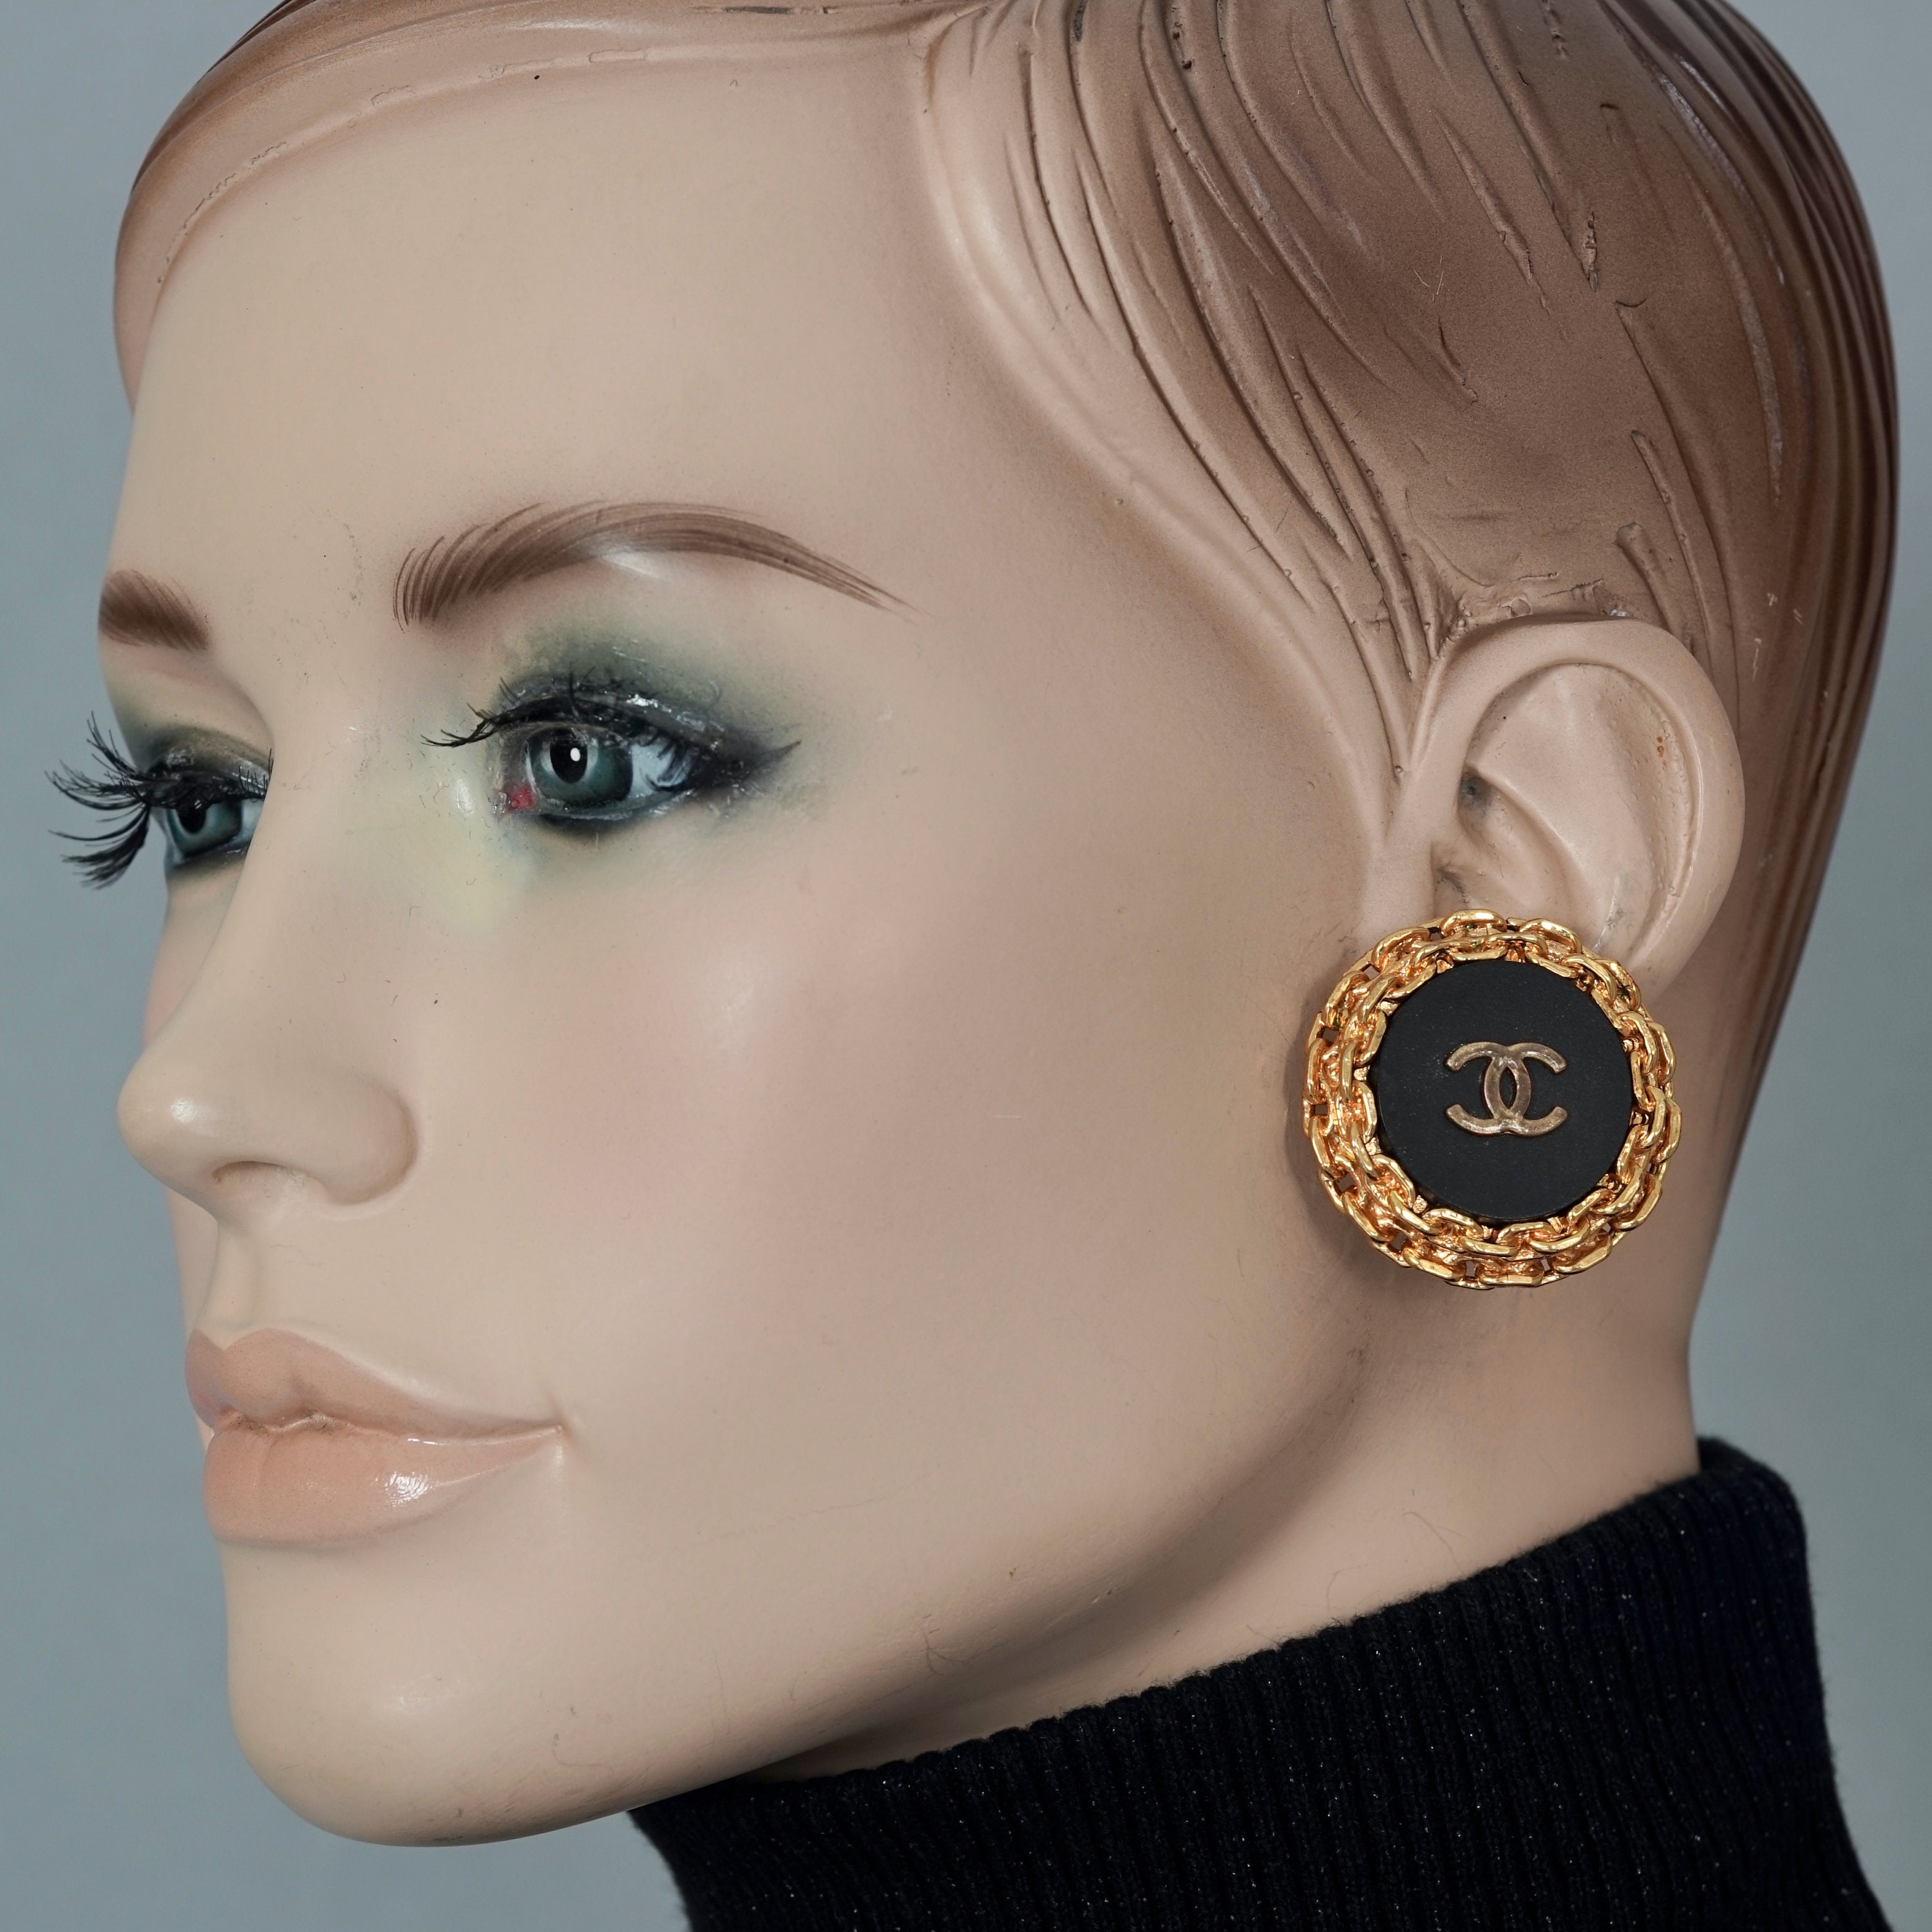 Chanel vintage earrings black - Gem